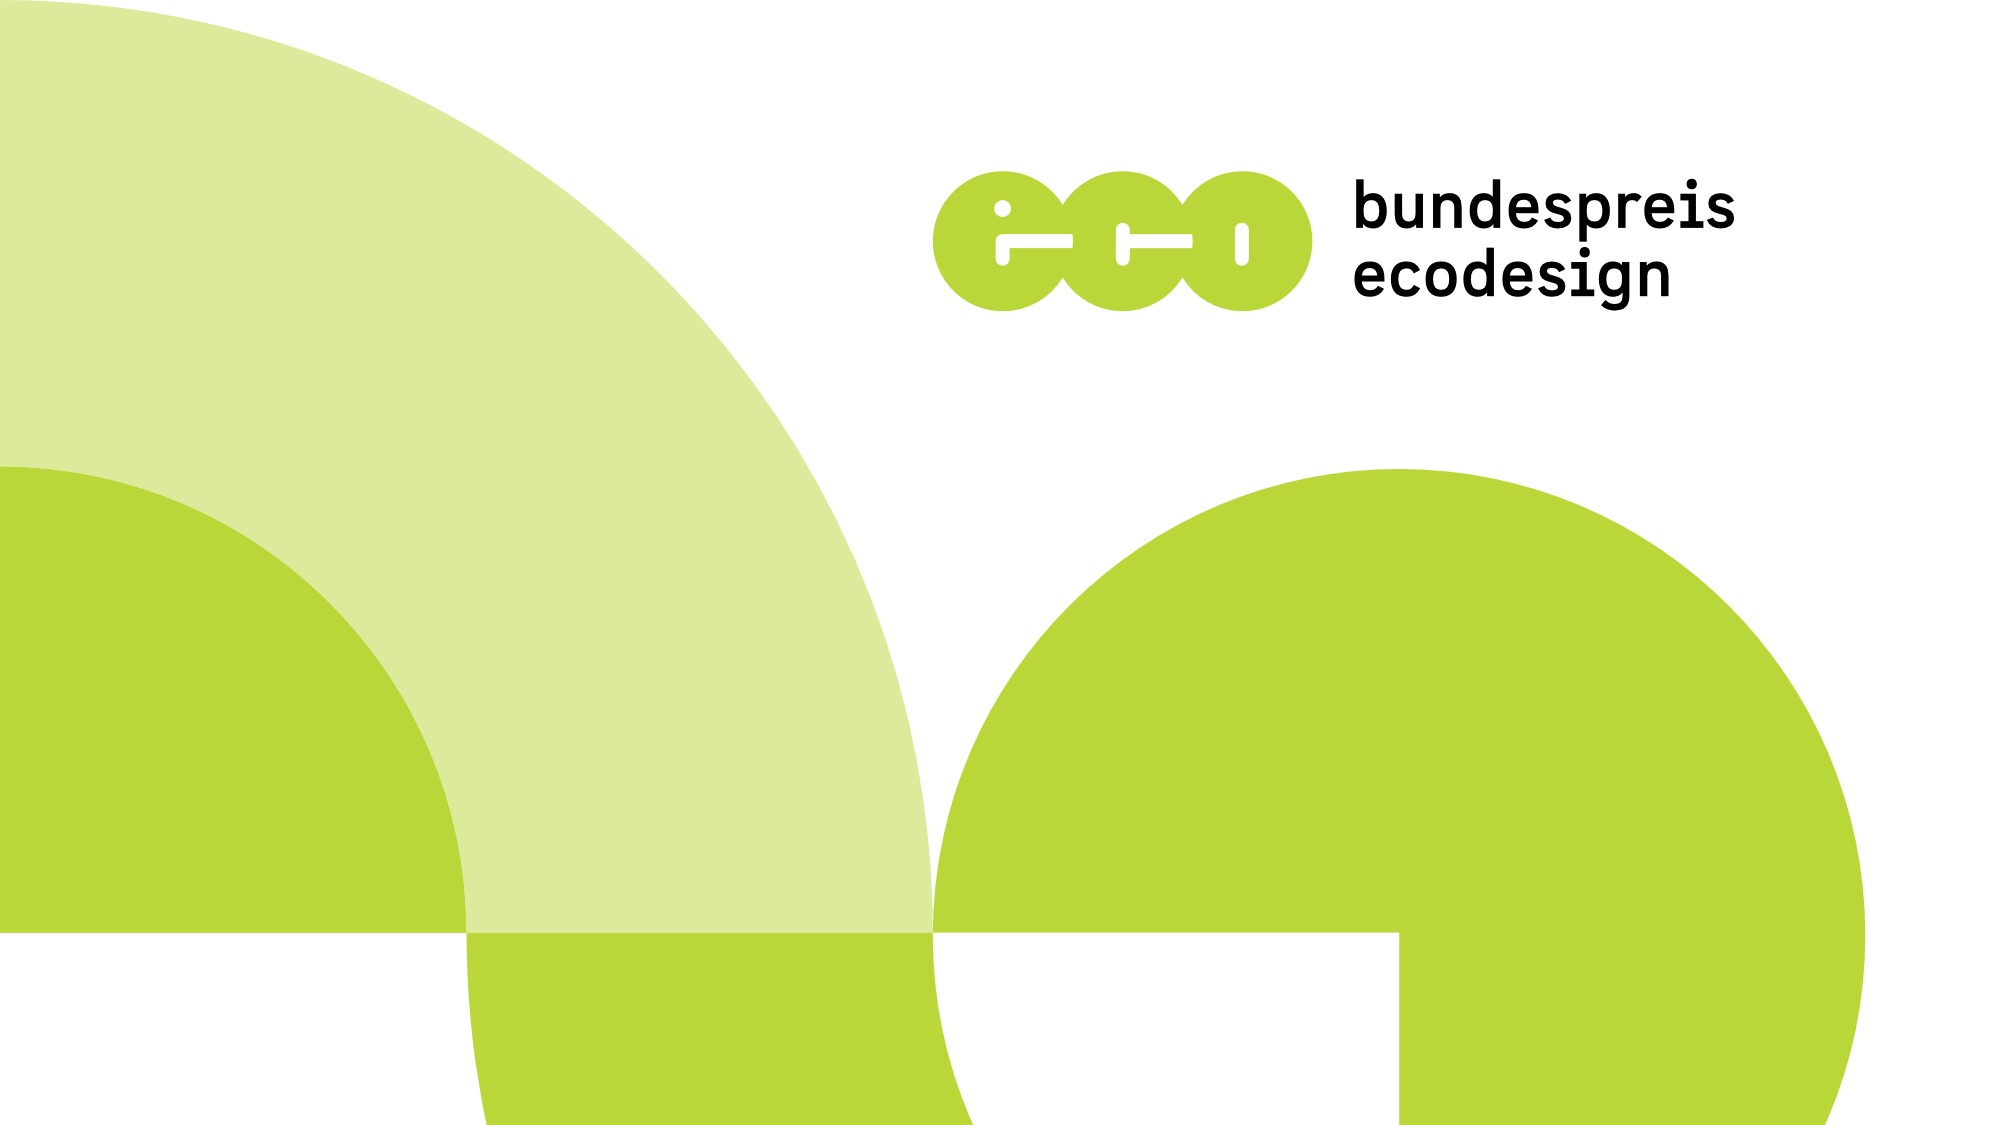 Das Logo des Bundespreis Ecodesign